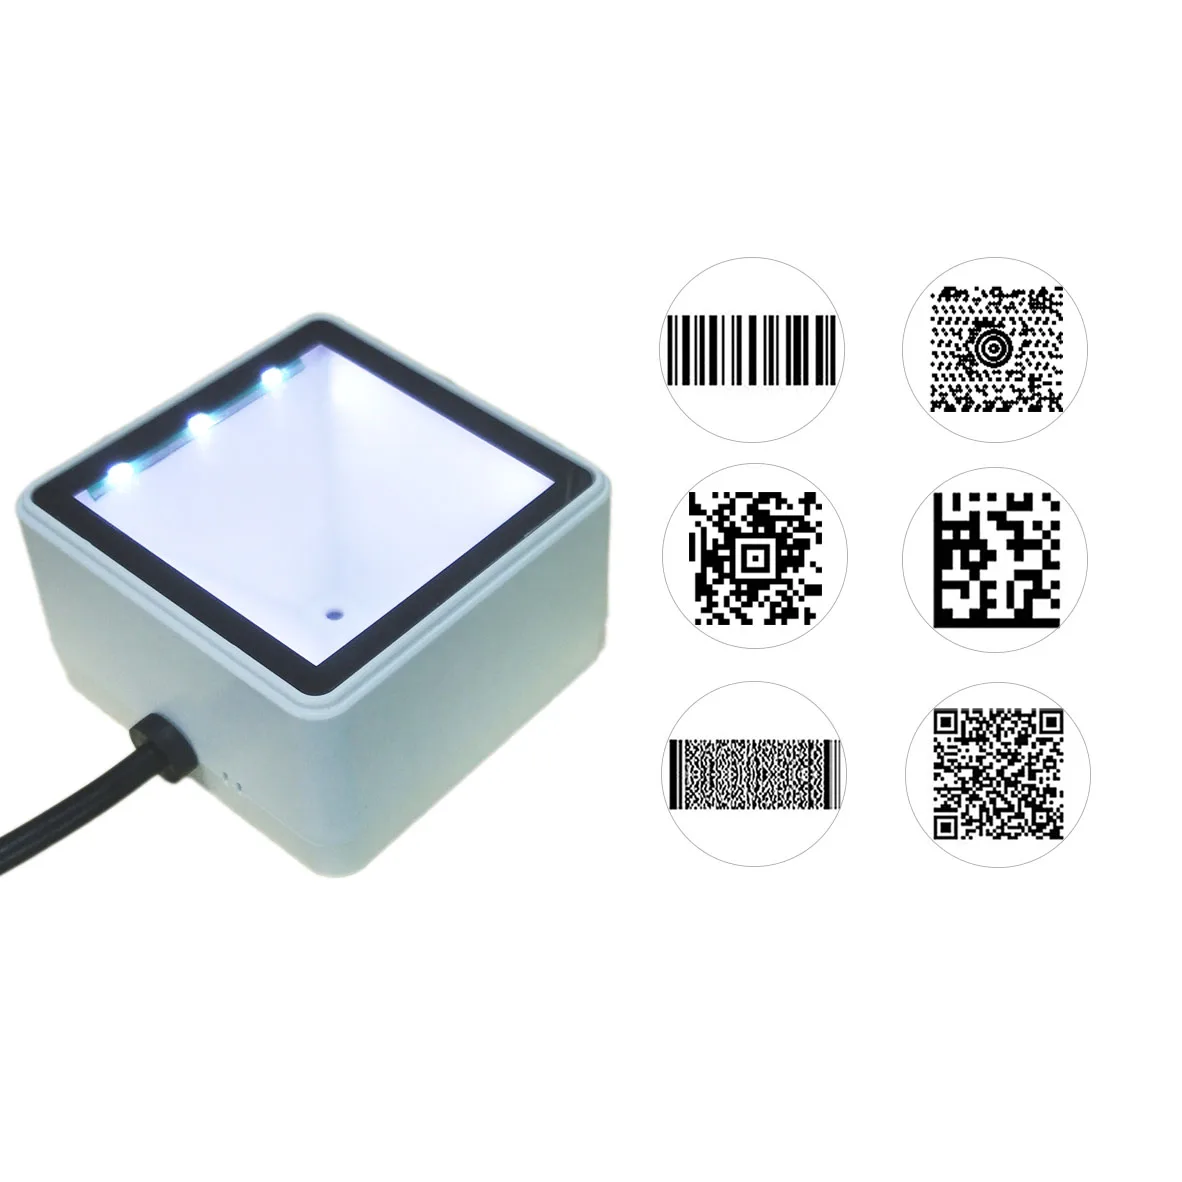 TEKLEAD USB сканер штрих-кода 2D мини qr-код считыватель автоматический модуль сканирования для Мобильных Платежей самообслуживания кино билетная машина